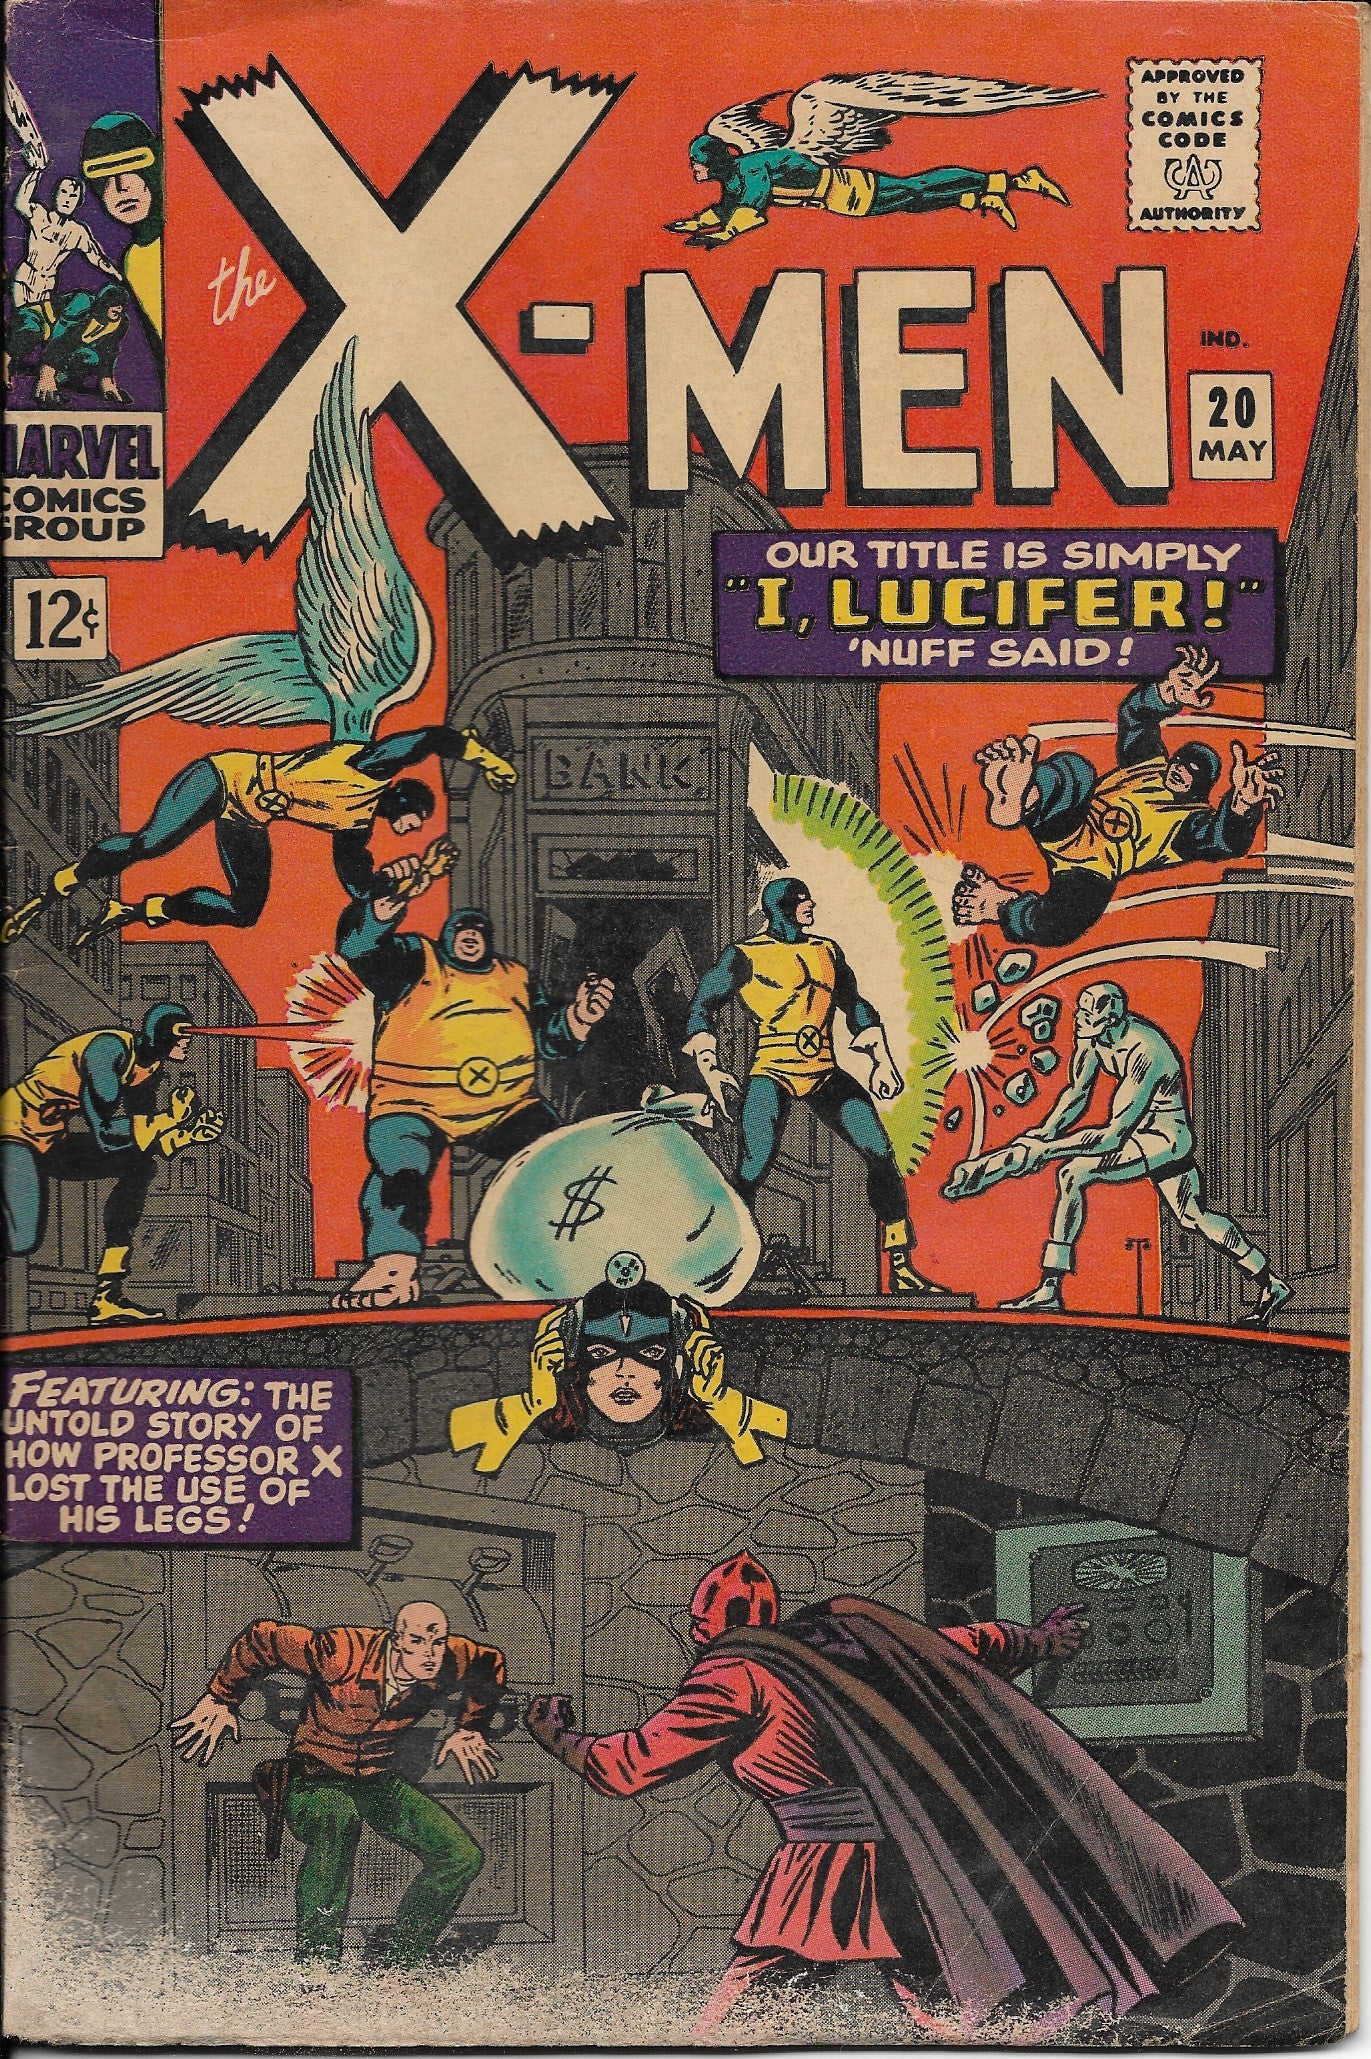 The X-Men No. 20, "I, Lucifer!," Marvel Comics, May 1966